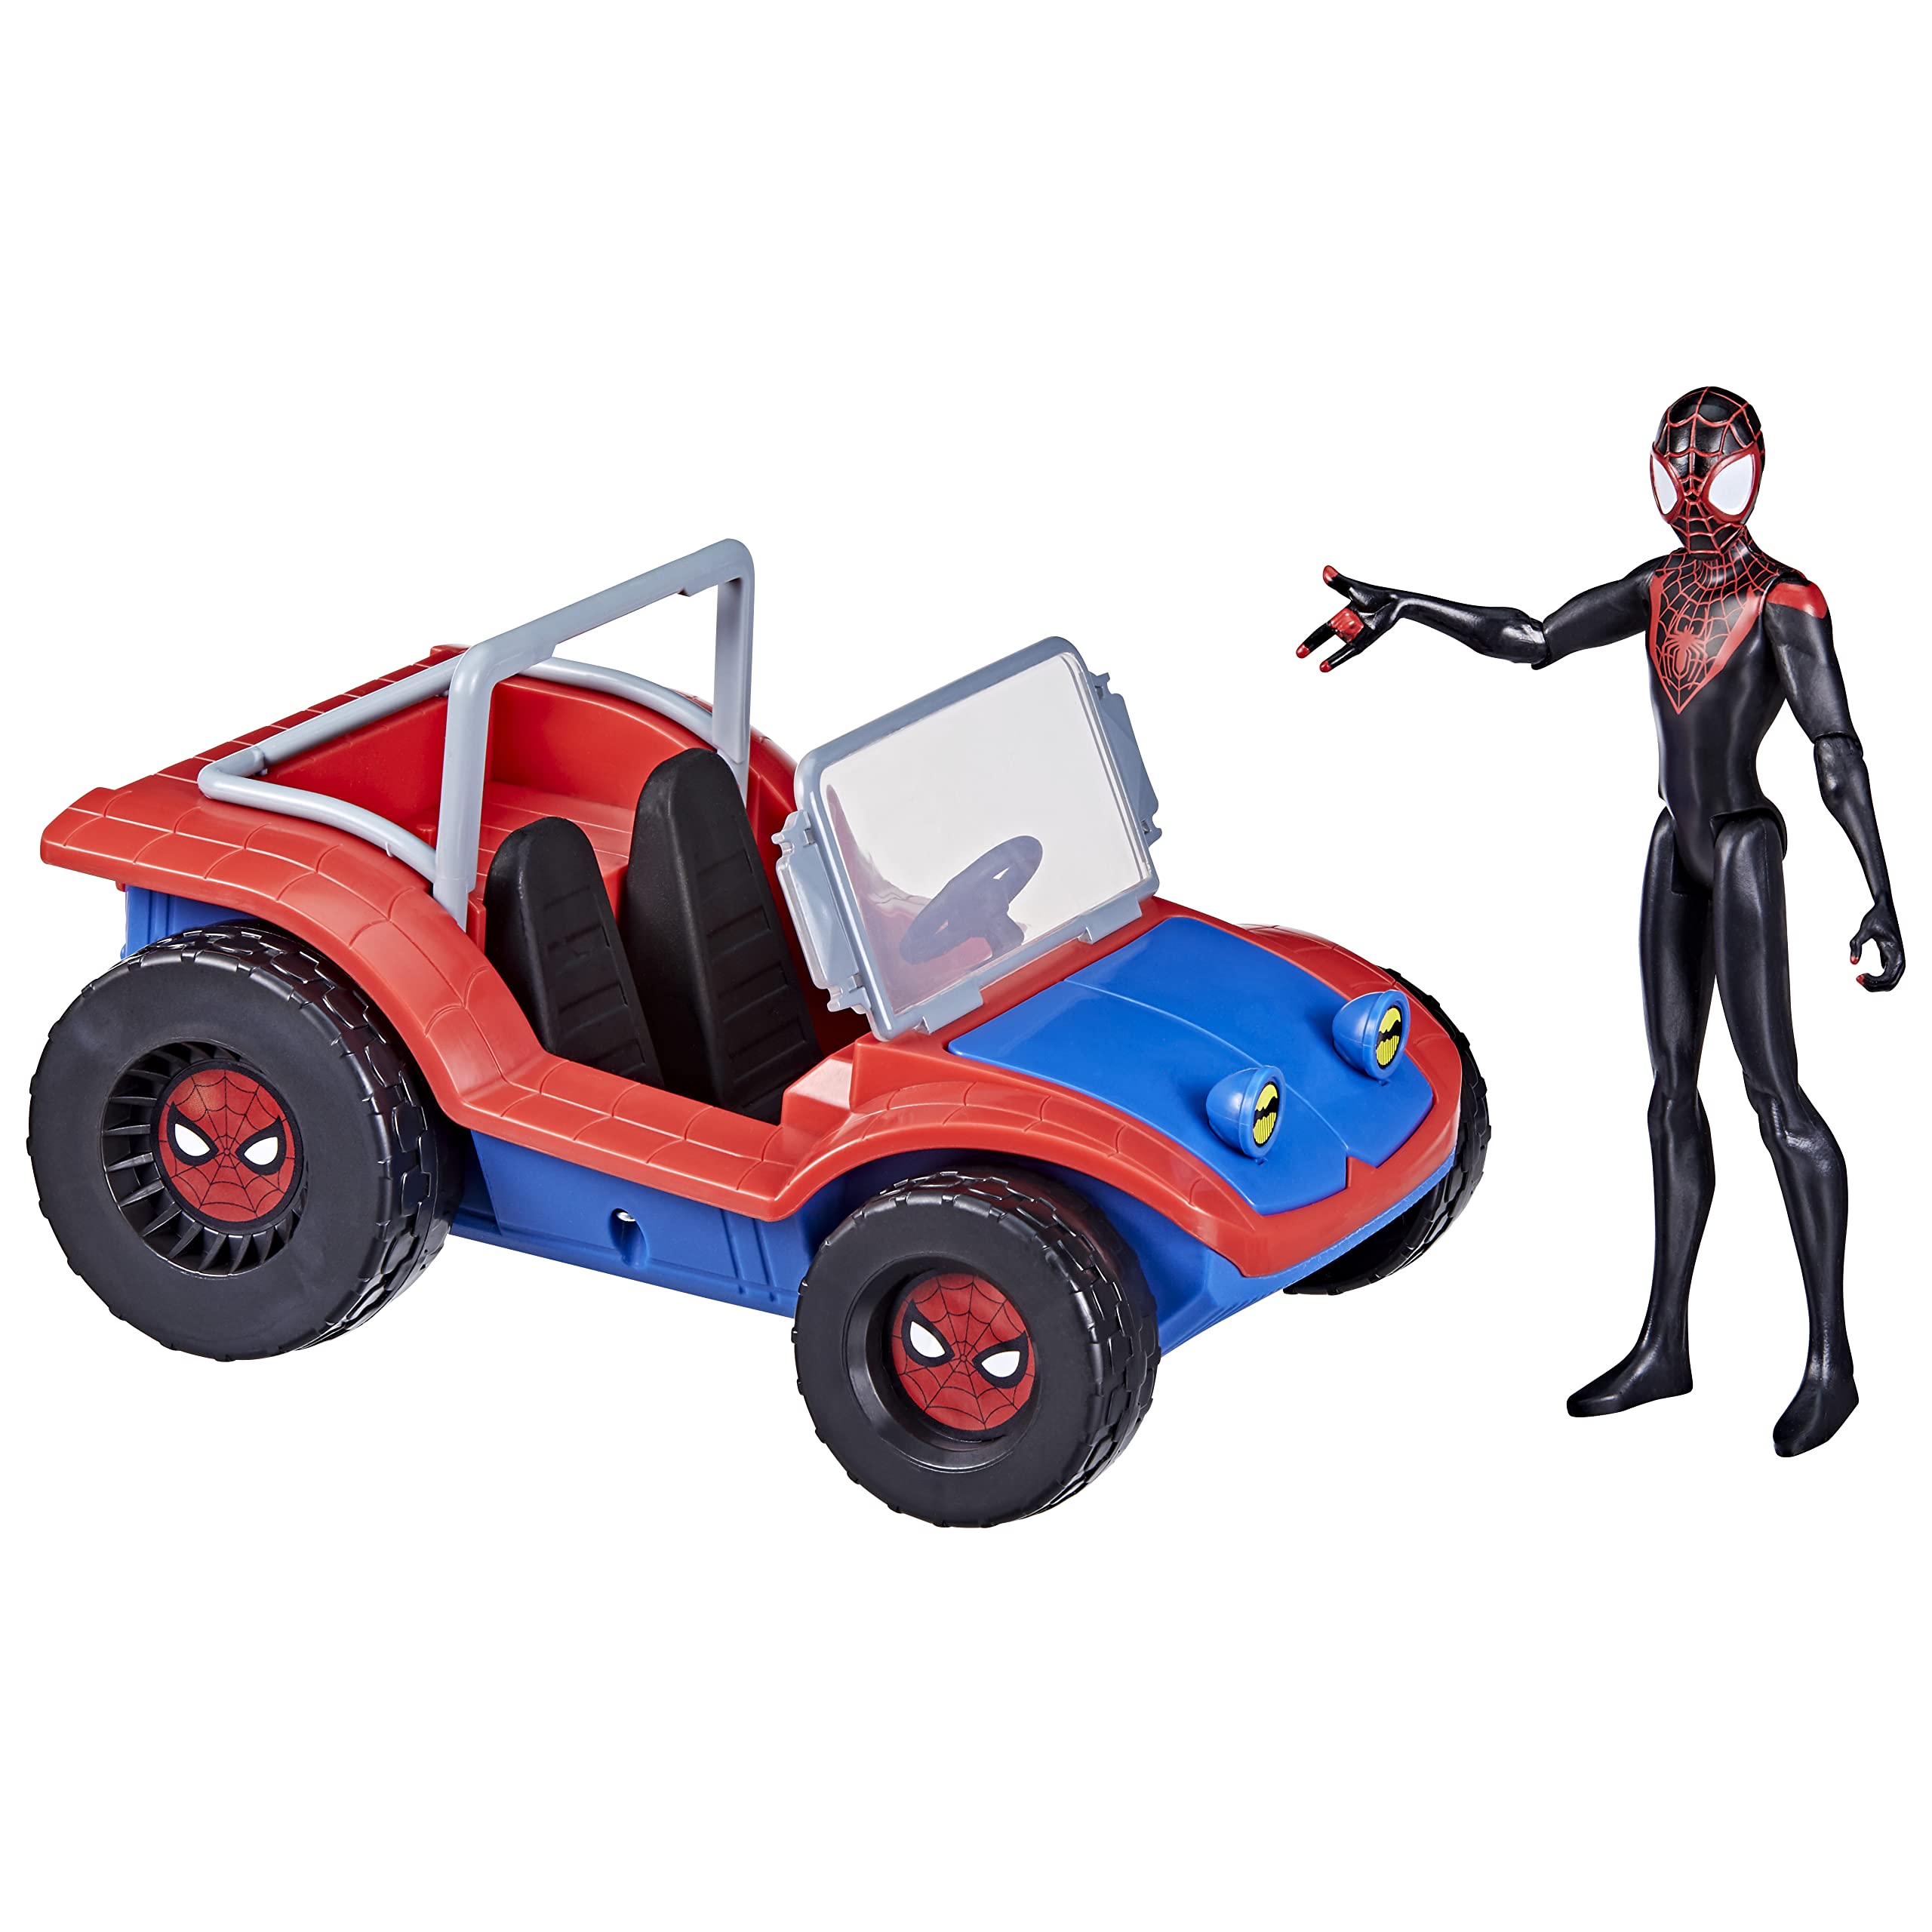 Hasbro Marvel Spider-Man Spider-Mobil, Fahrzeug mit Miles Morales Action-Figur, Marvel Spielzeug für Kinder ab 4 Jahren